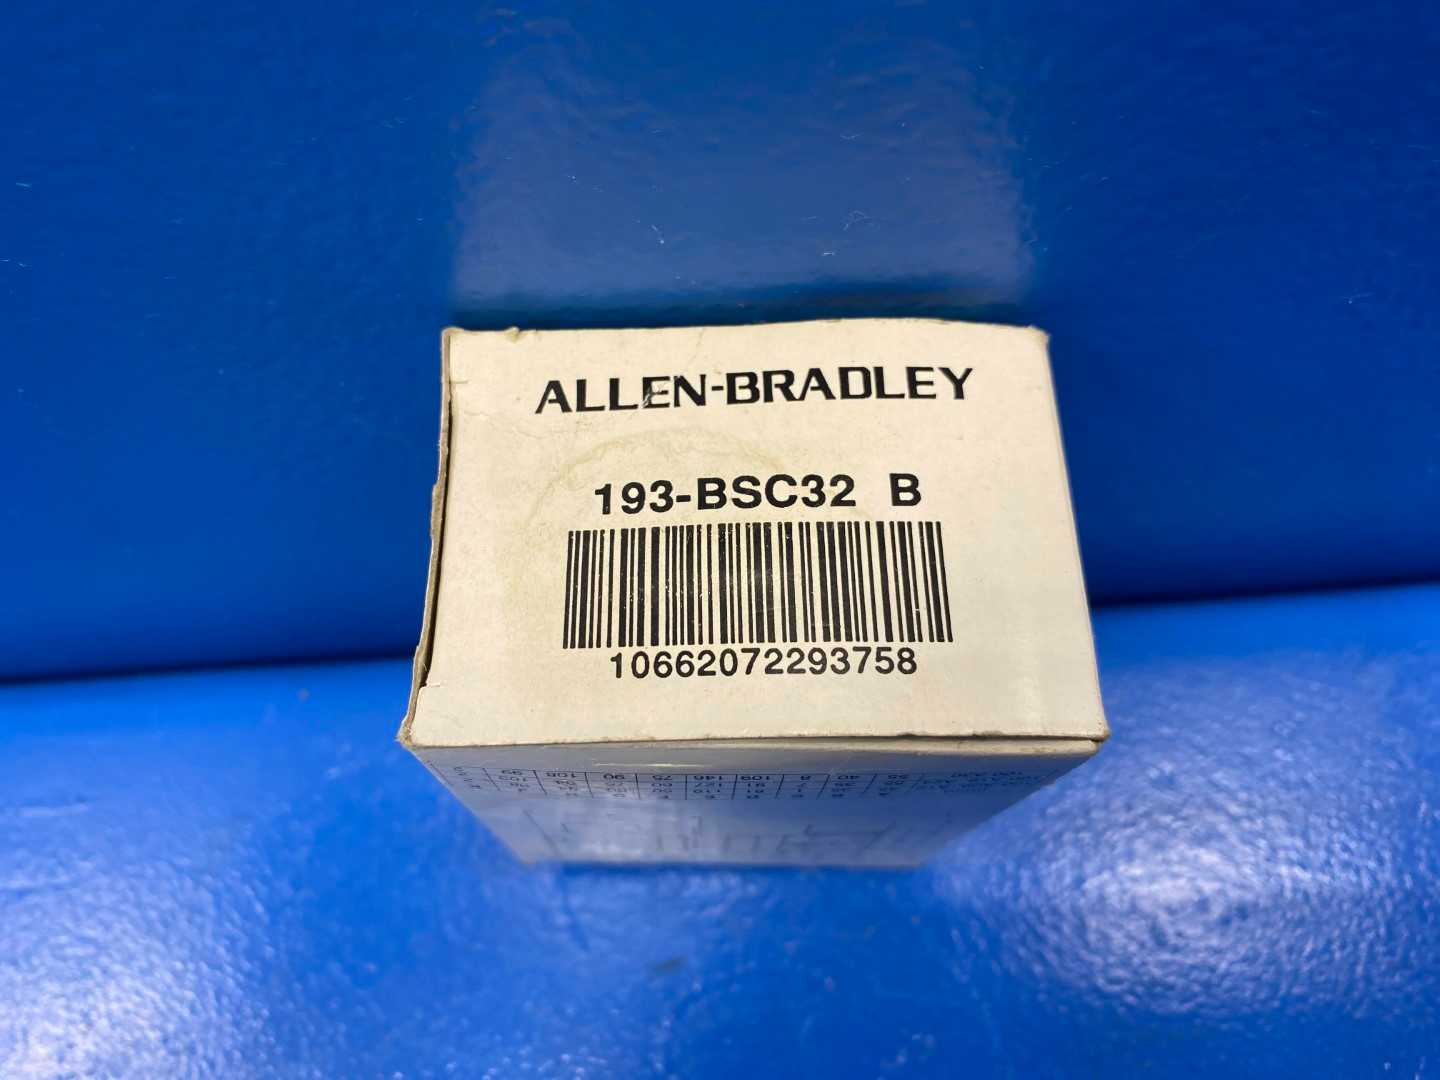 Allen Bradley Bulletin 193-BSC32